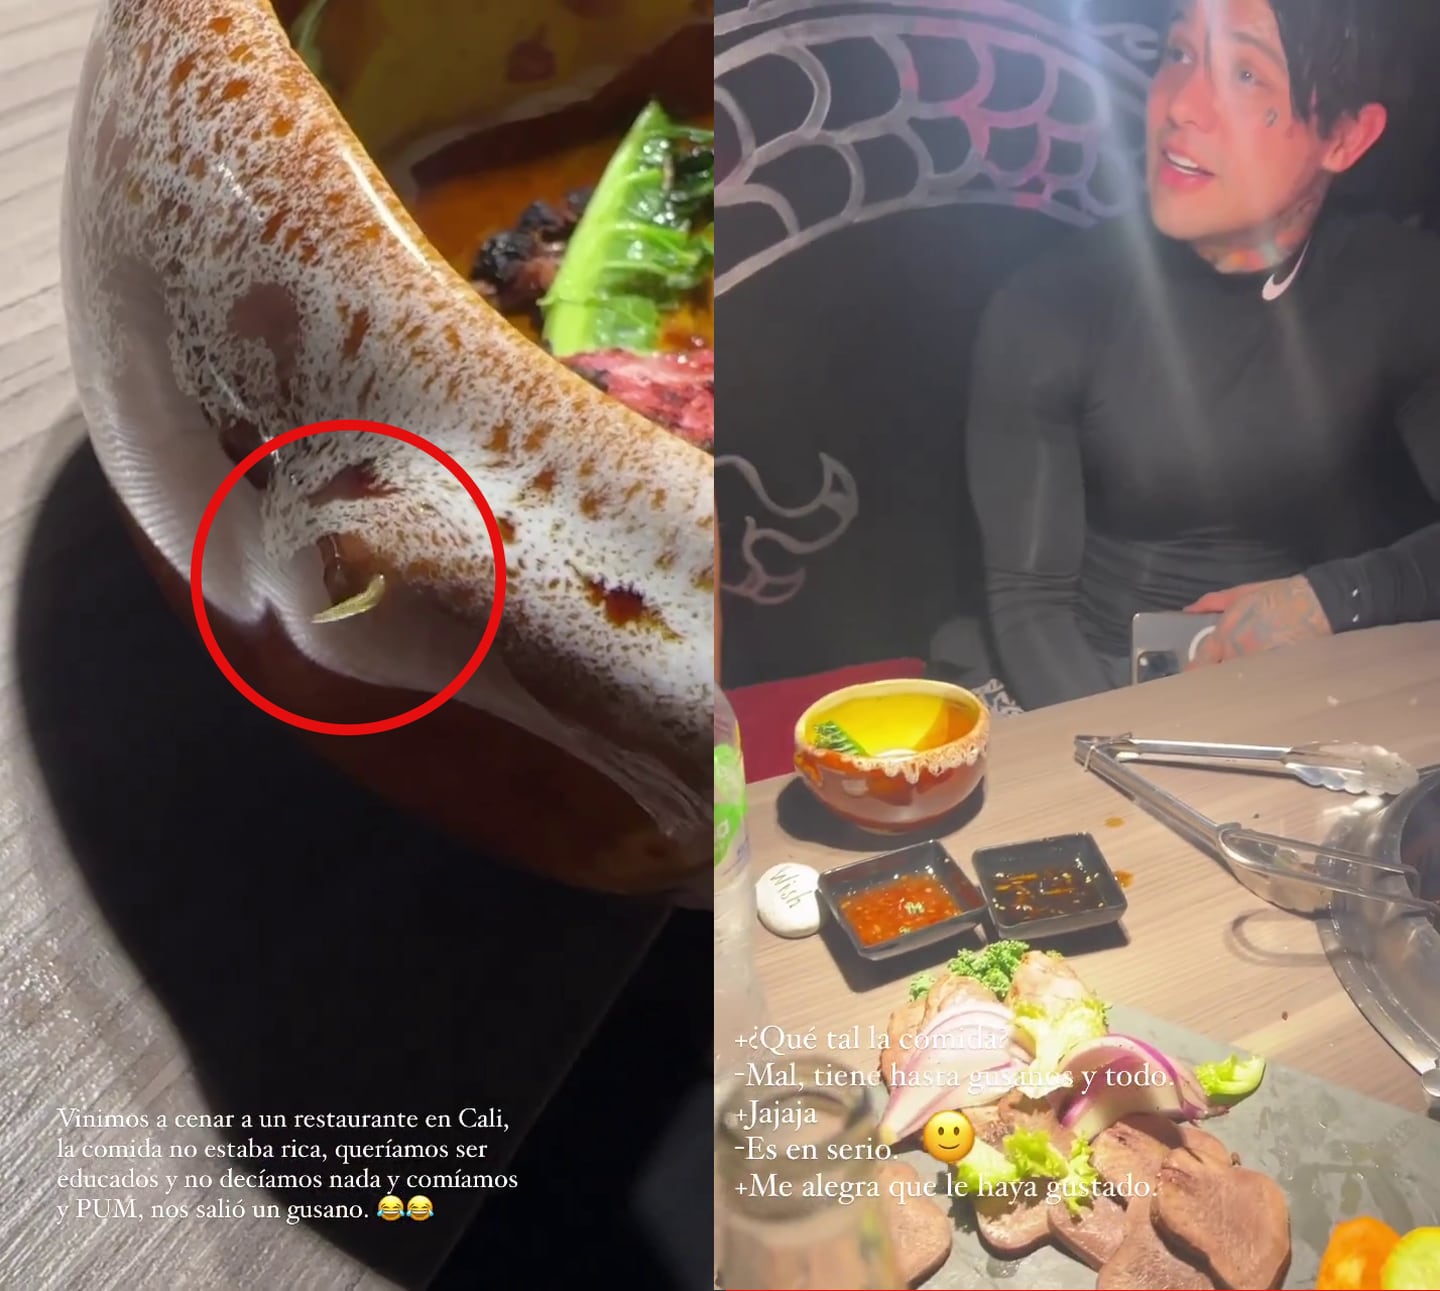 Yeferson Cossio se encontró un gusano mientras comía en un restaurante